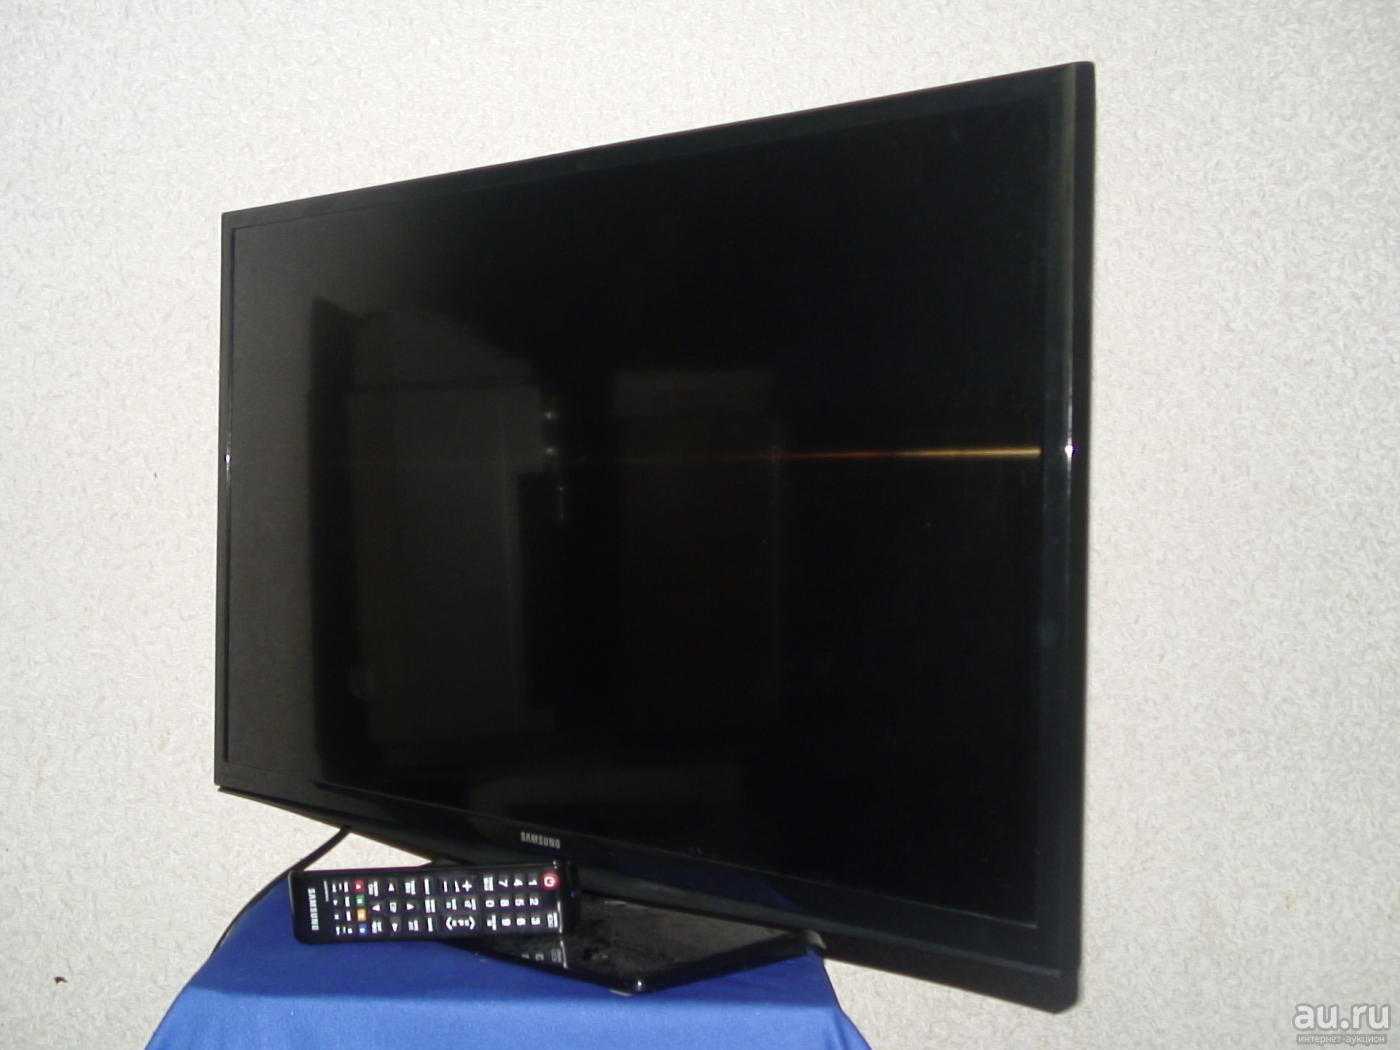 Телевизор Samsung UE32H4000 - подробные характеристики обзоры видео фото Цены в интернет-магазинах где можно купить телевизор Samsung UE32H4000